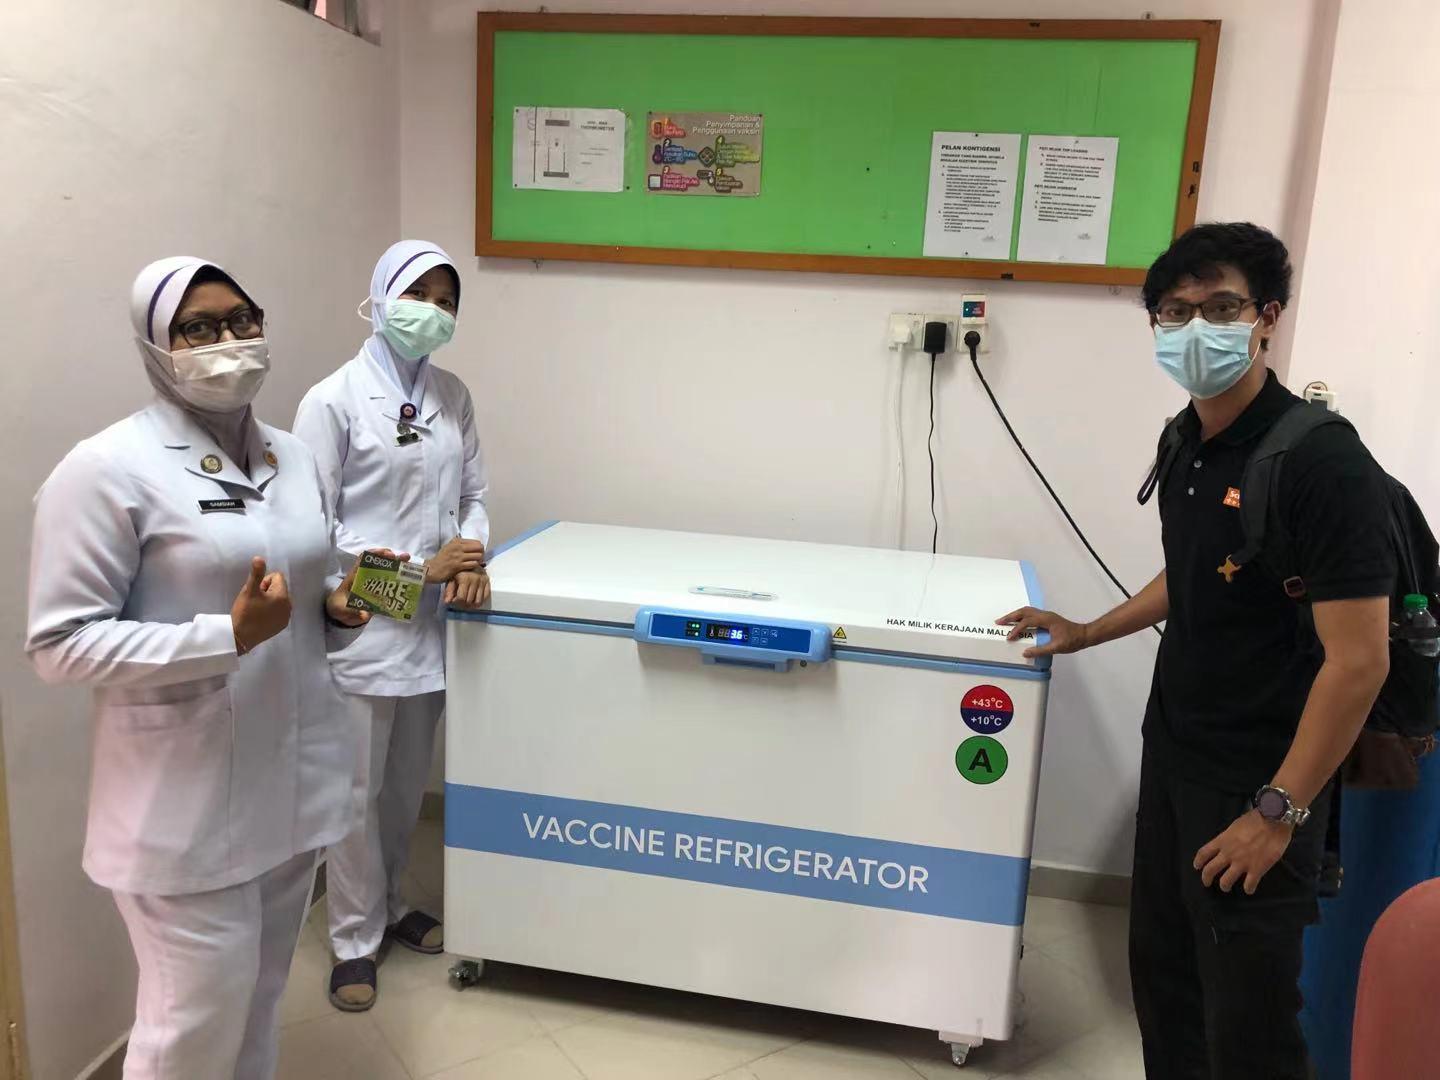 Le réfrigérateur Meling Ice Lined aide à la vaccination en Malaisie
